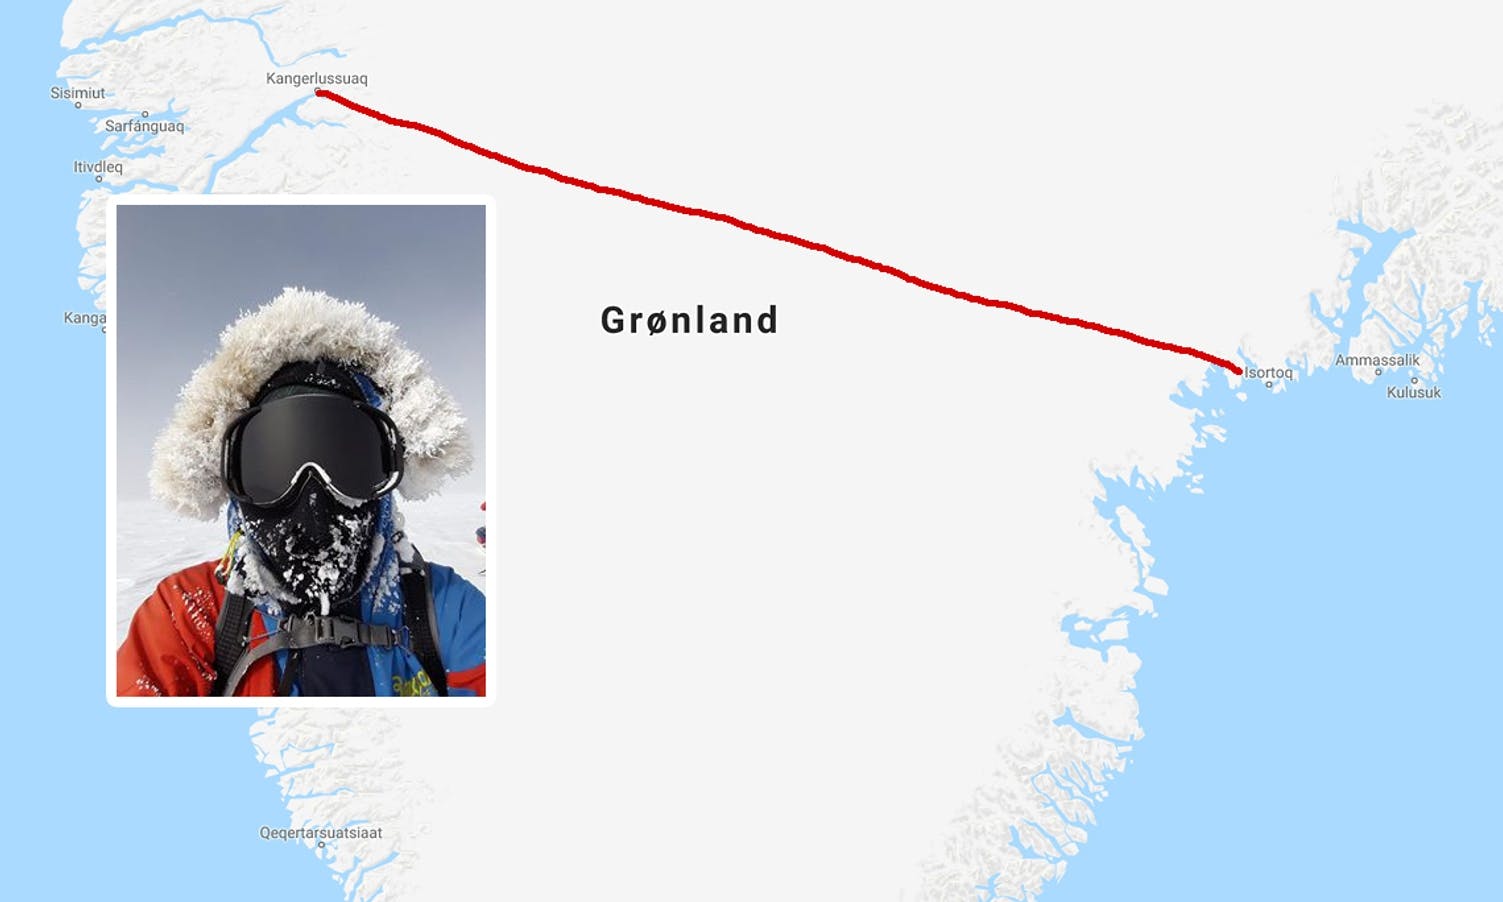 Ingrid fekk ein tøff tur over Grønland